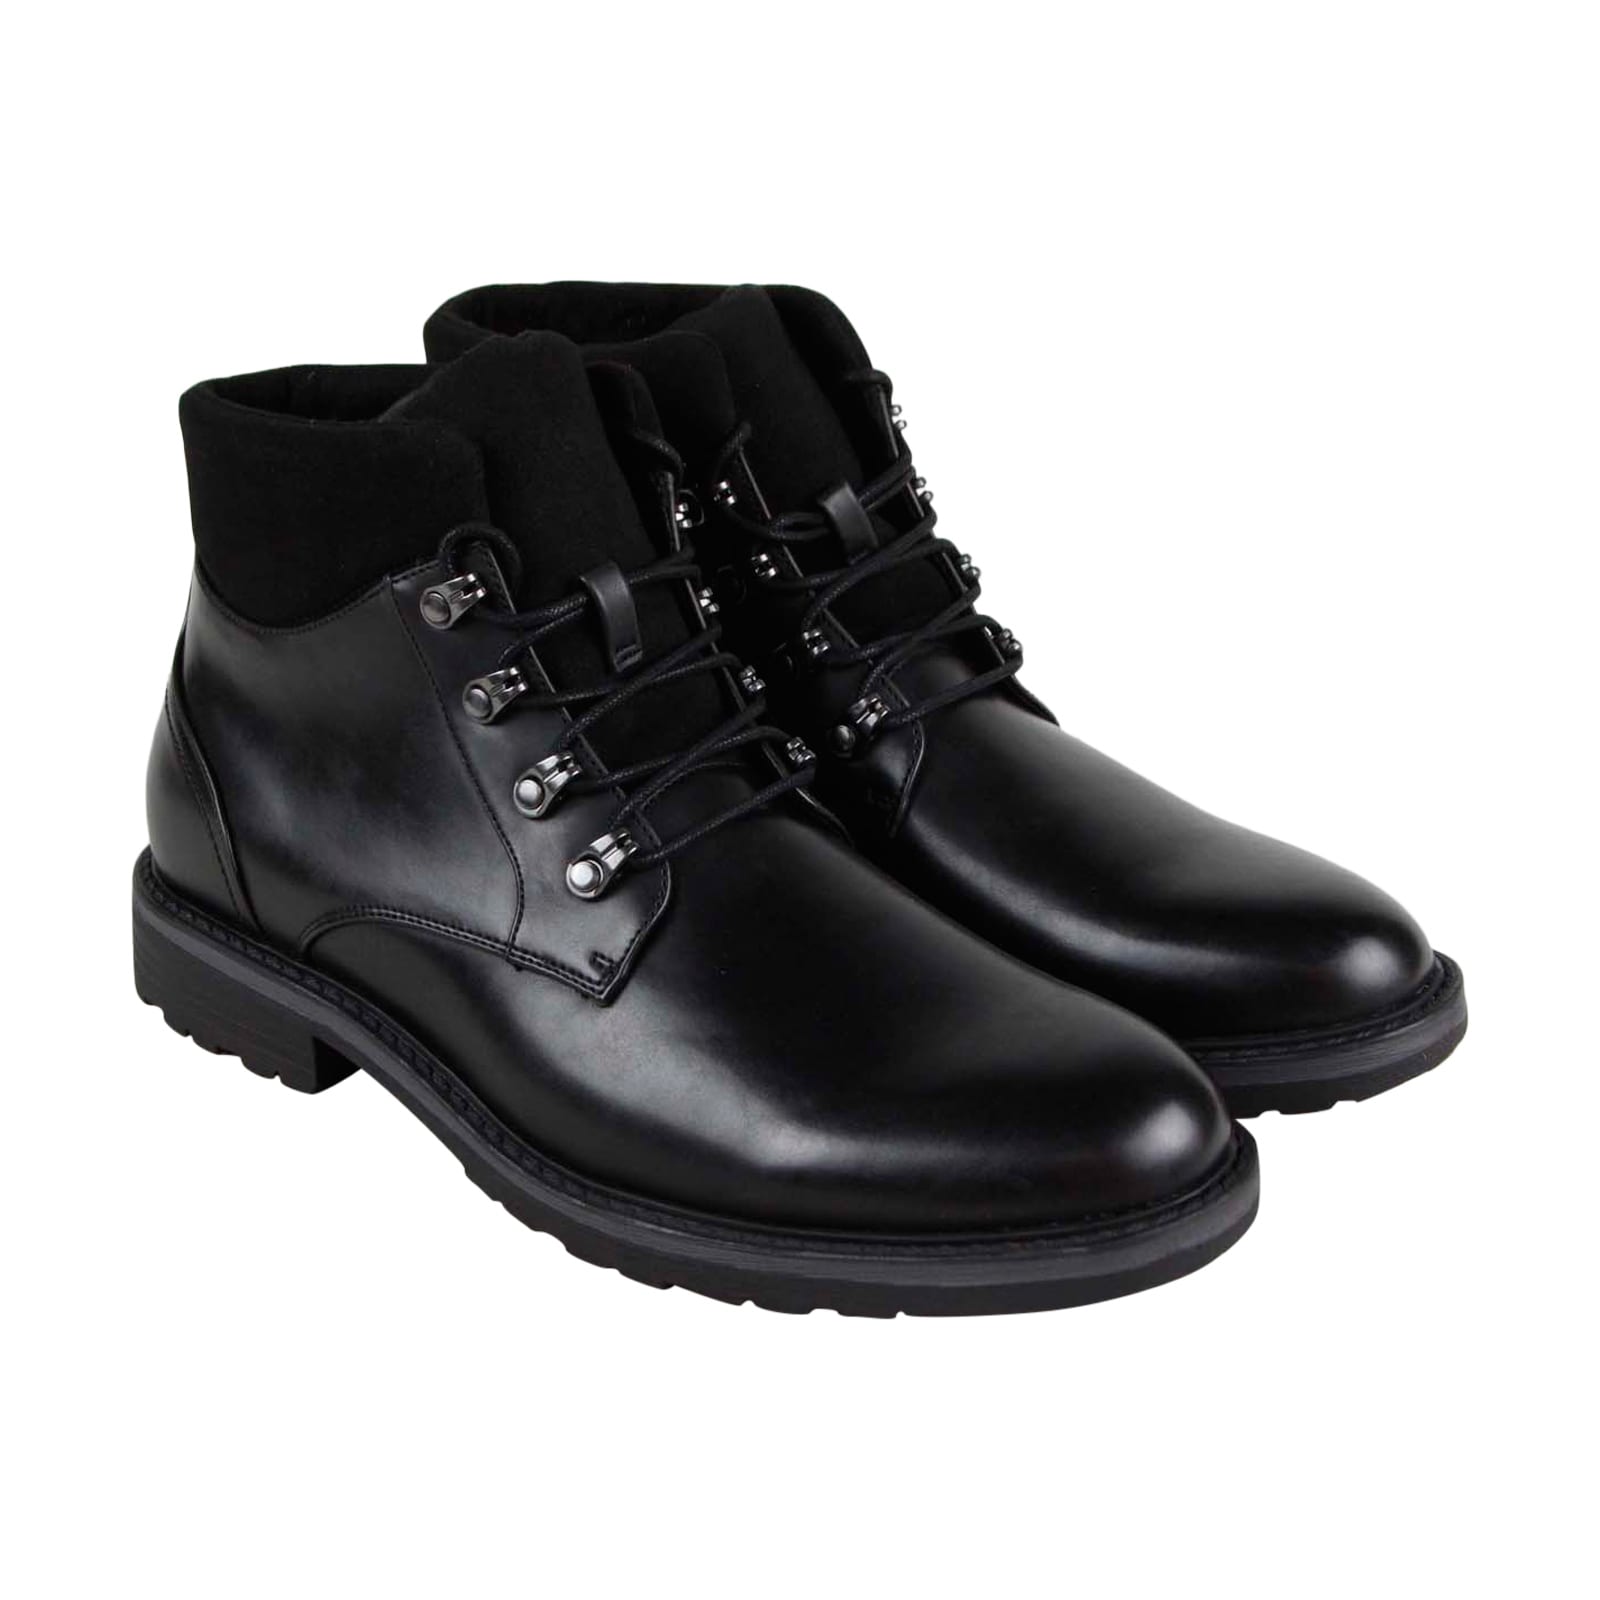 mens casual dress boots black